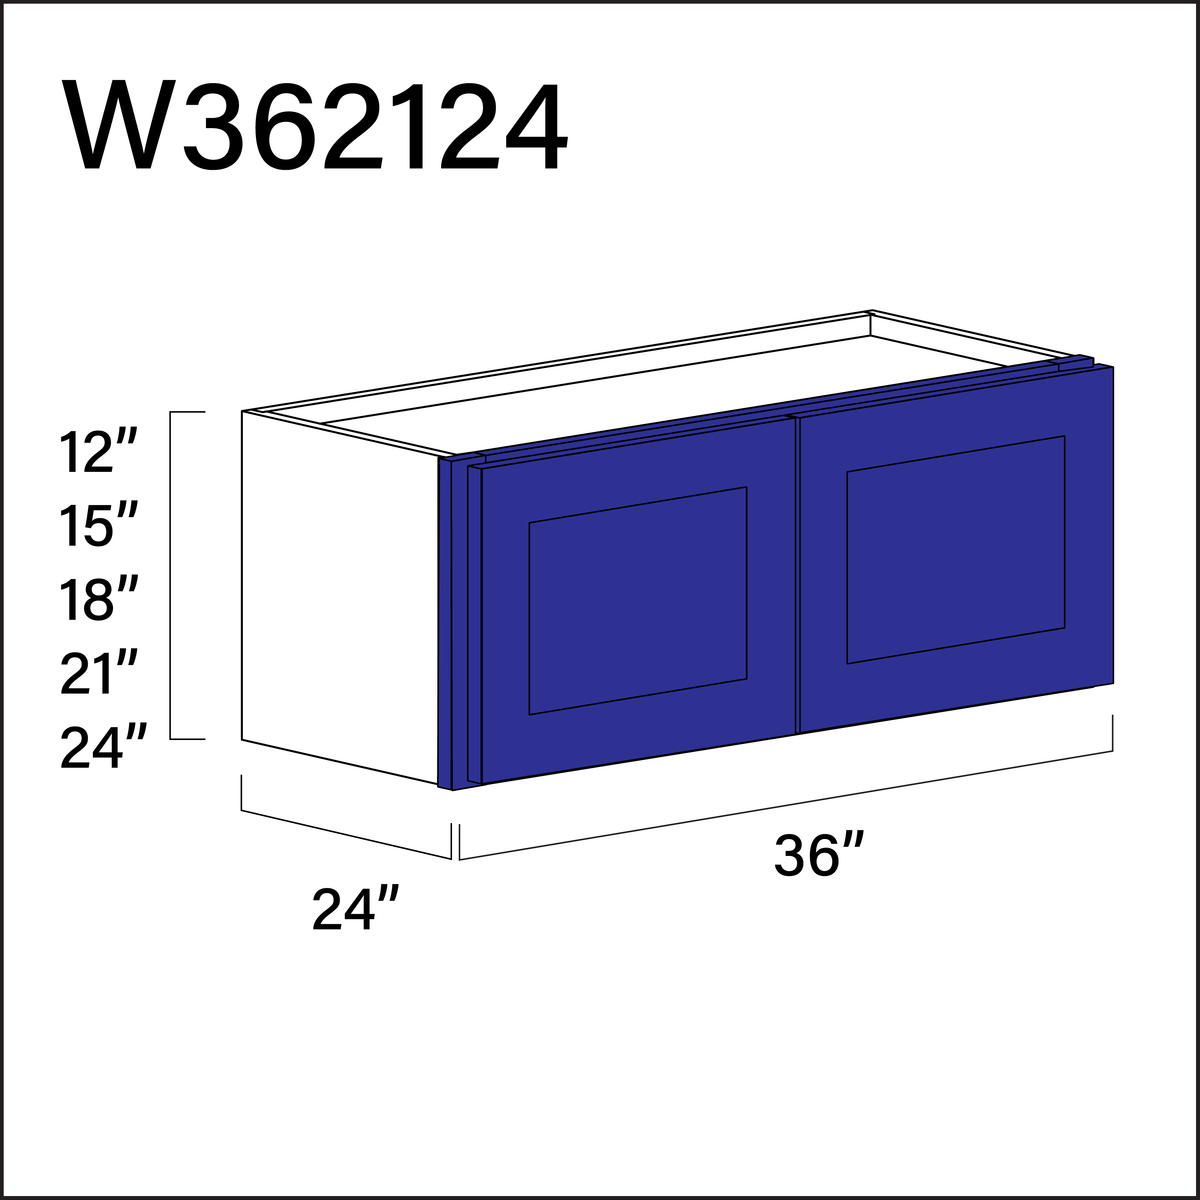 Blue Shaker Wall Bridge Double Door Cabinet - 36" W x 21" H x 24" D